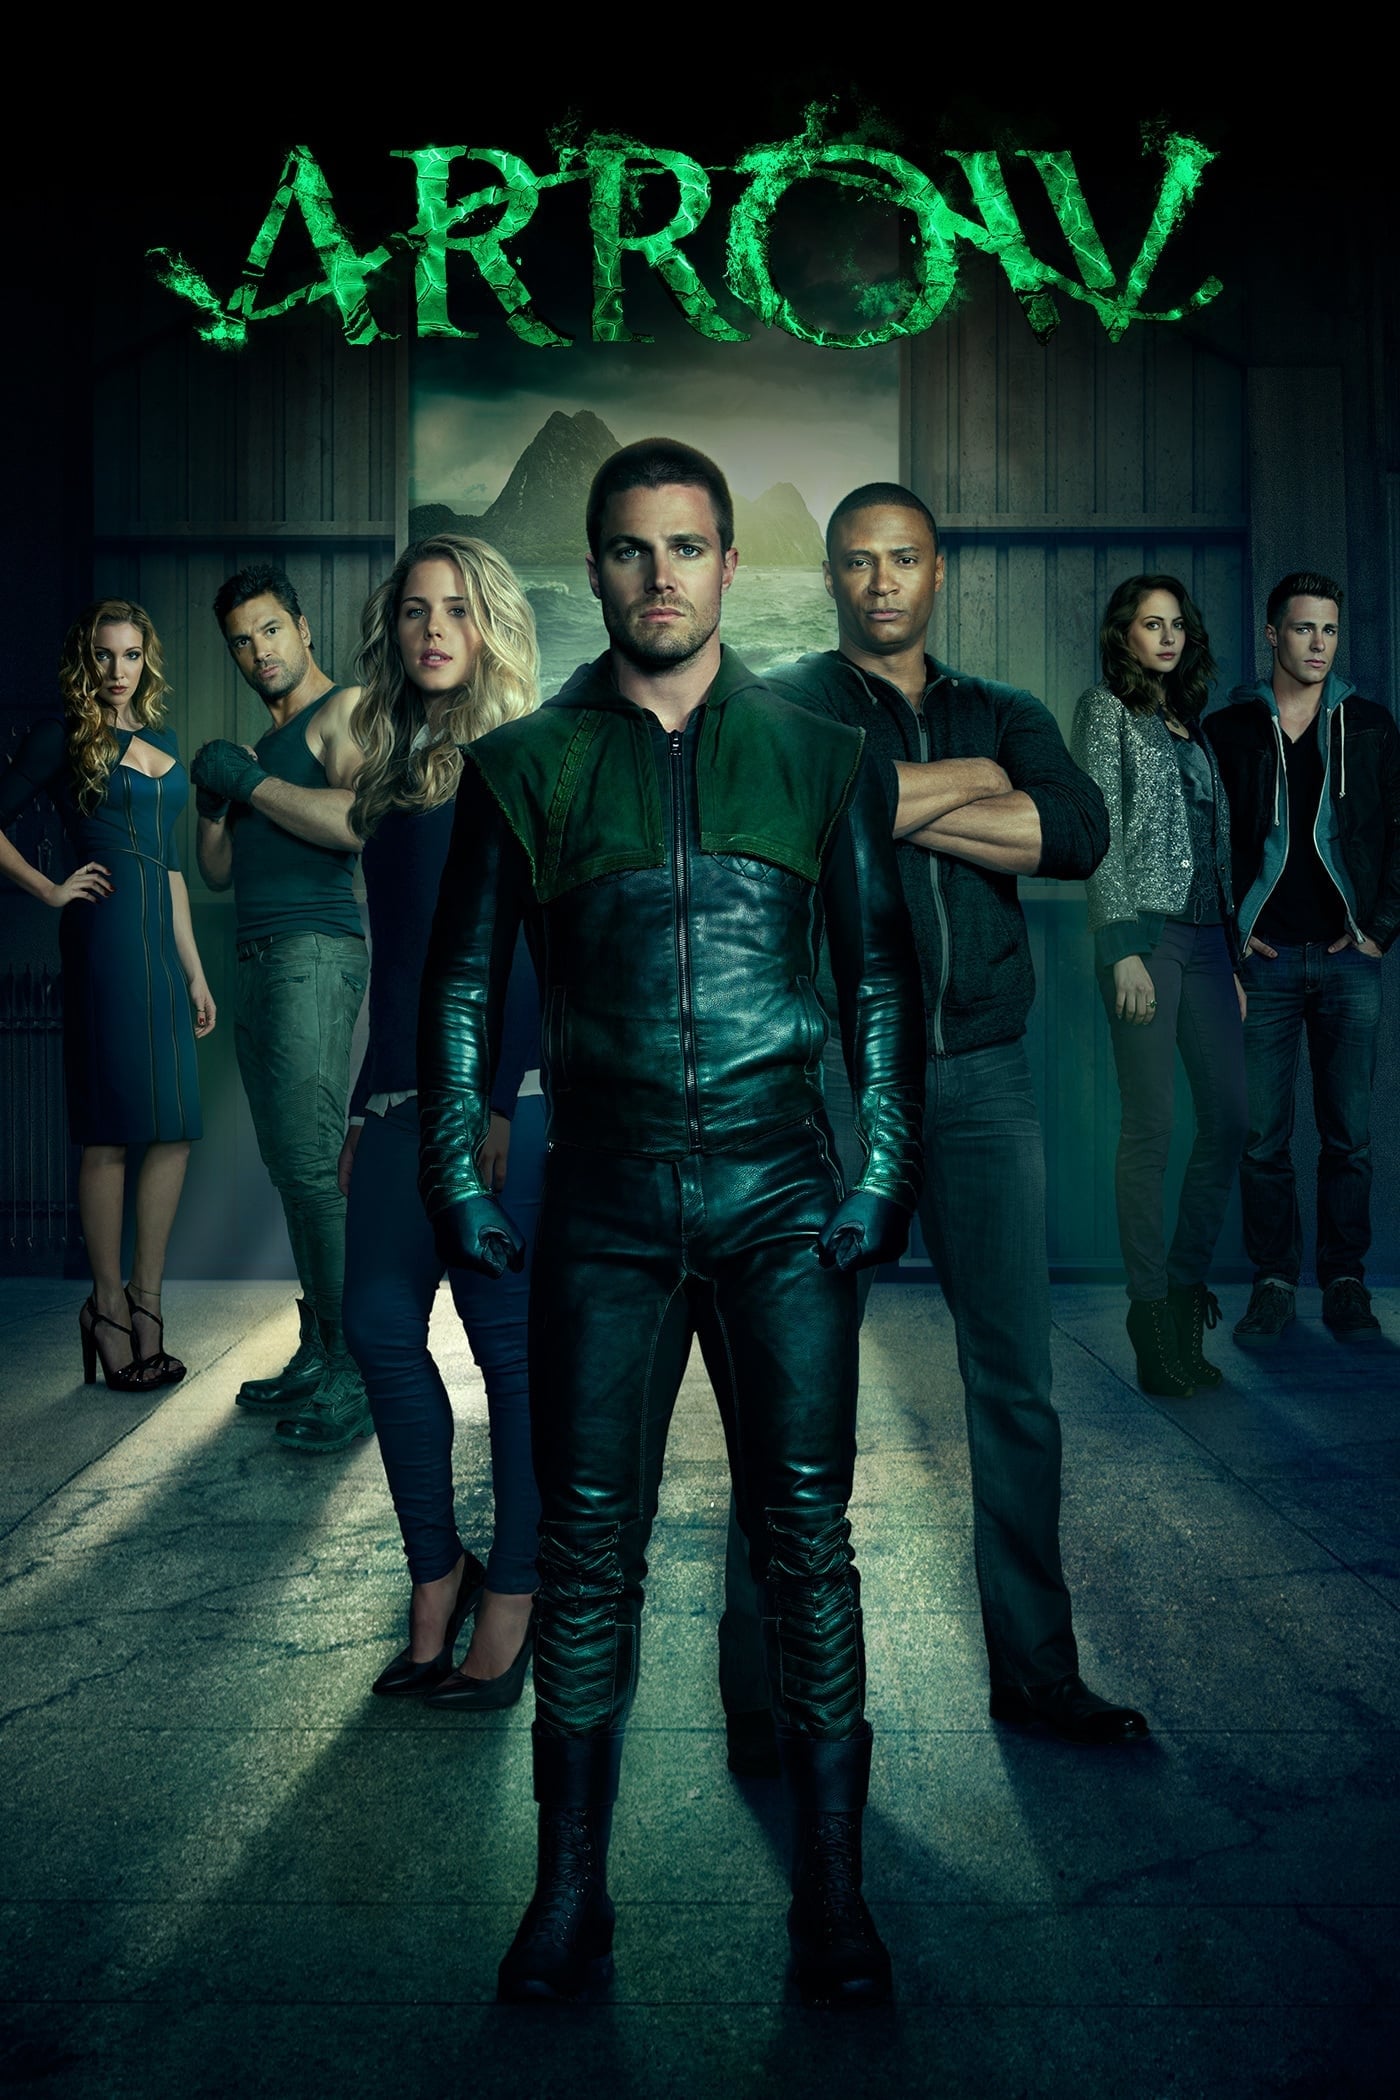 Arrow Season 2 (2013)